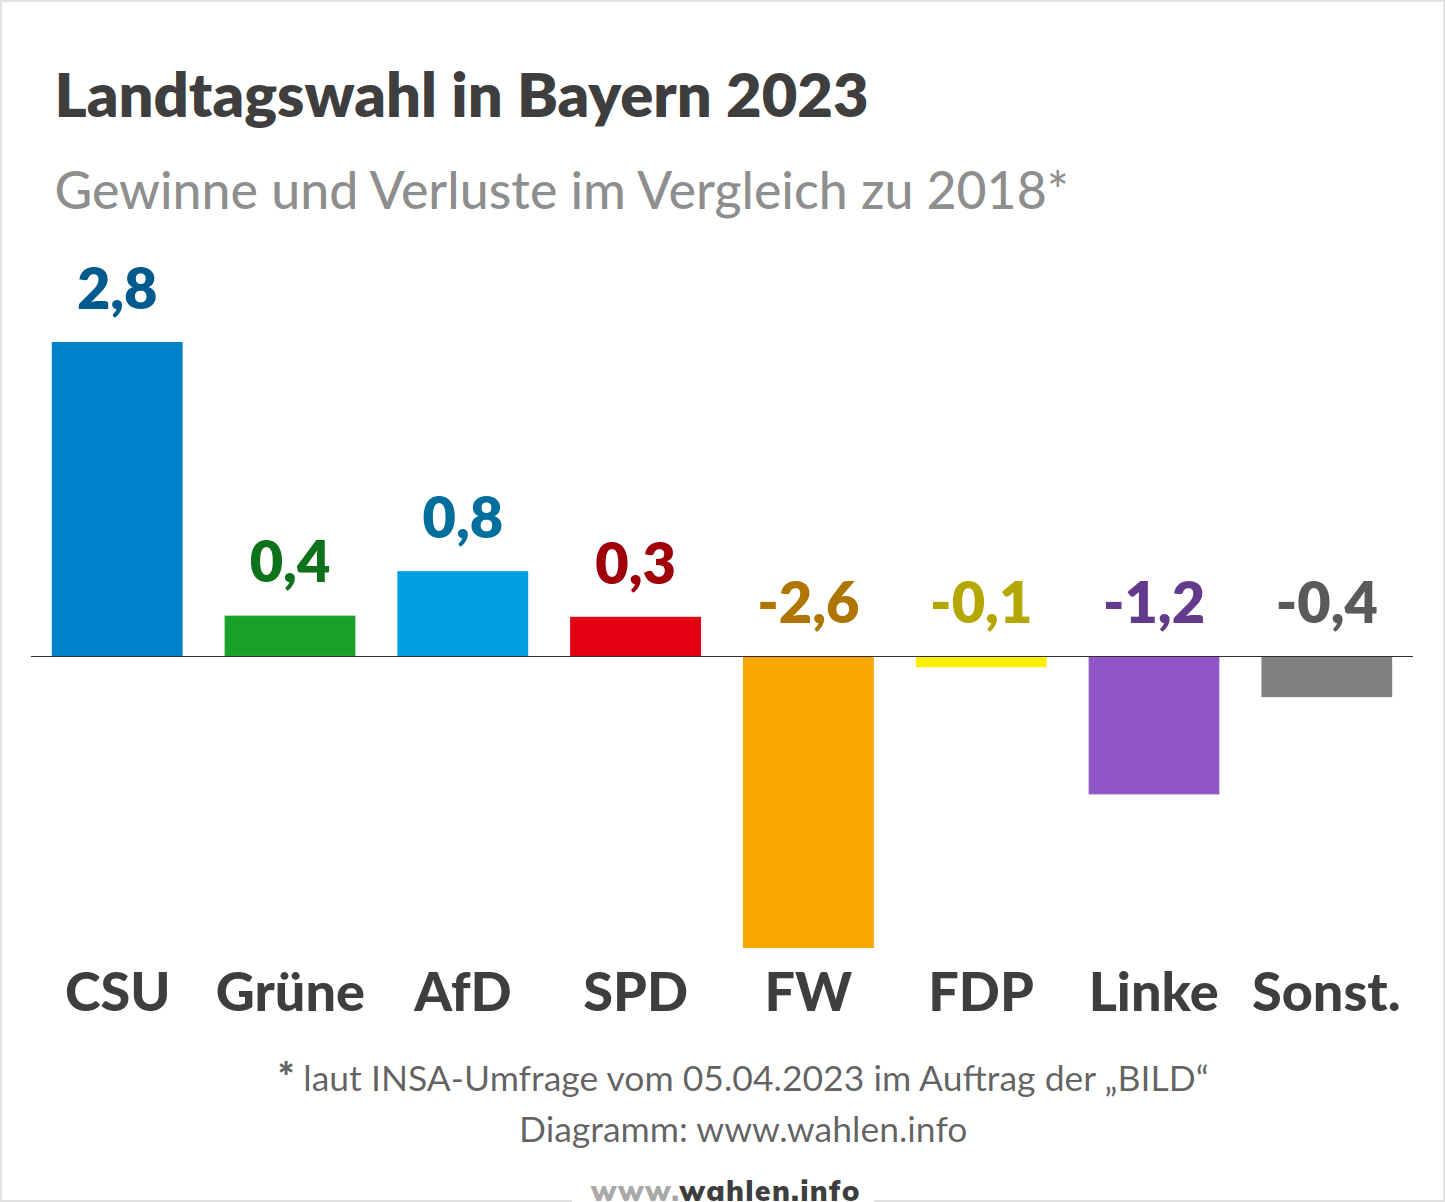 Landtagswahl 2023 in Bayern - Prognose